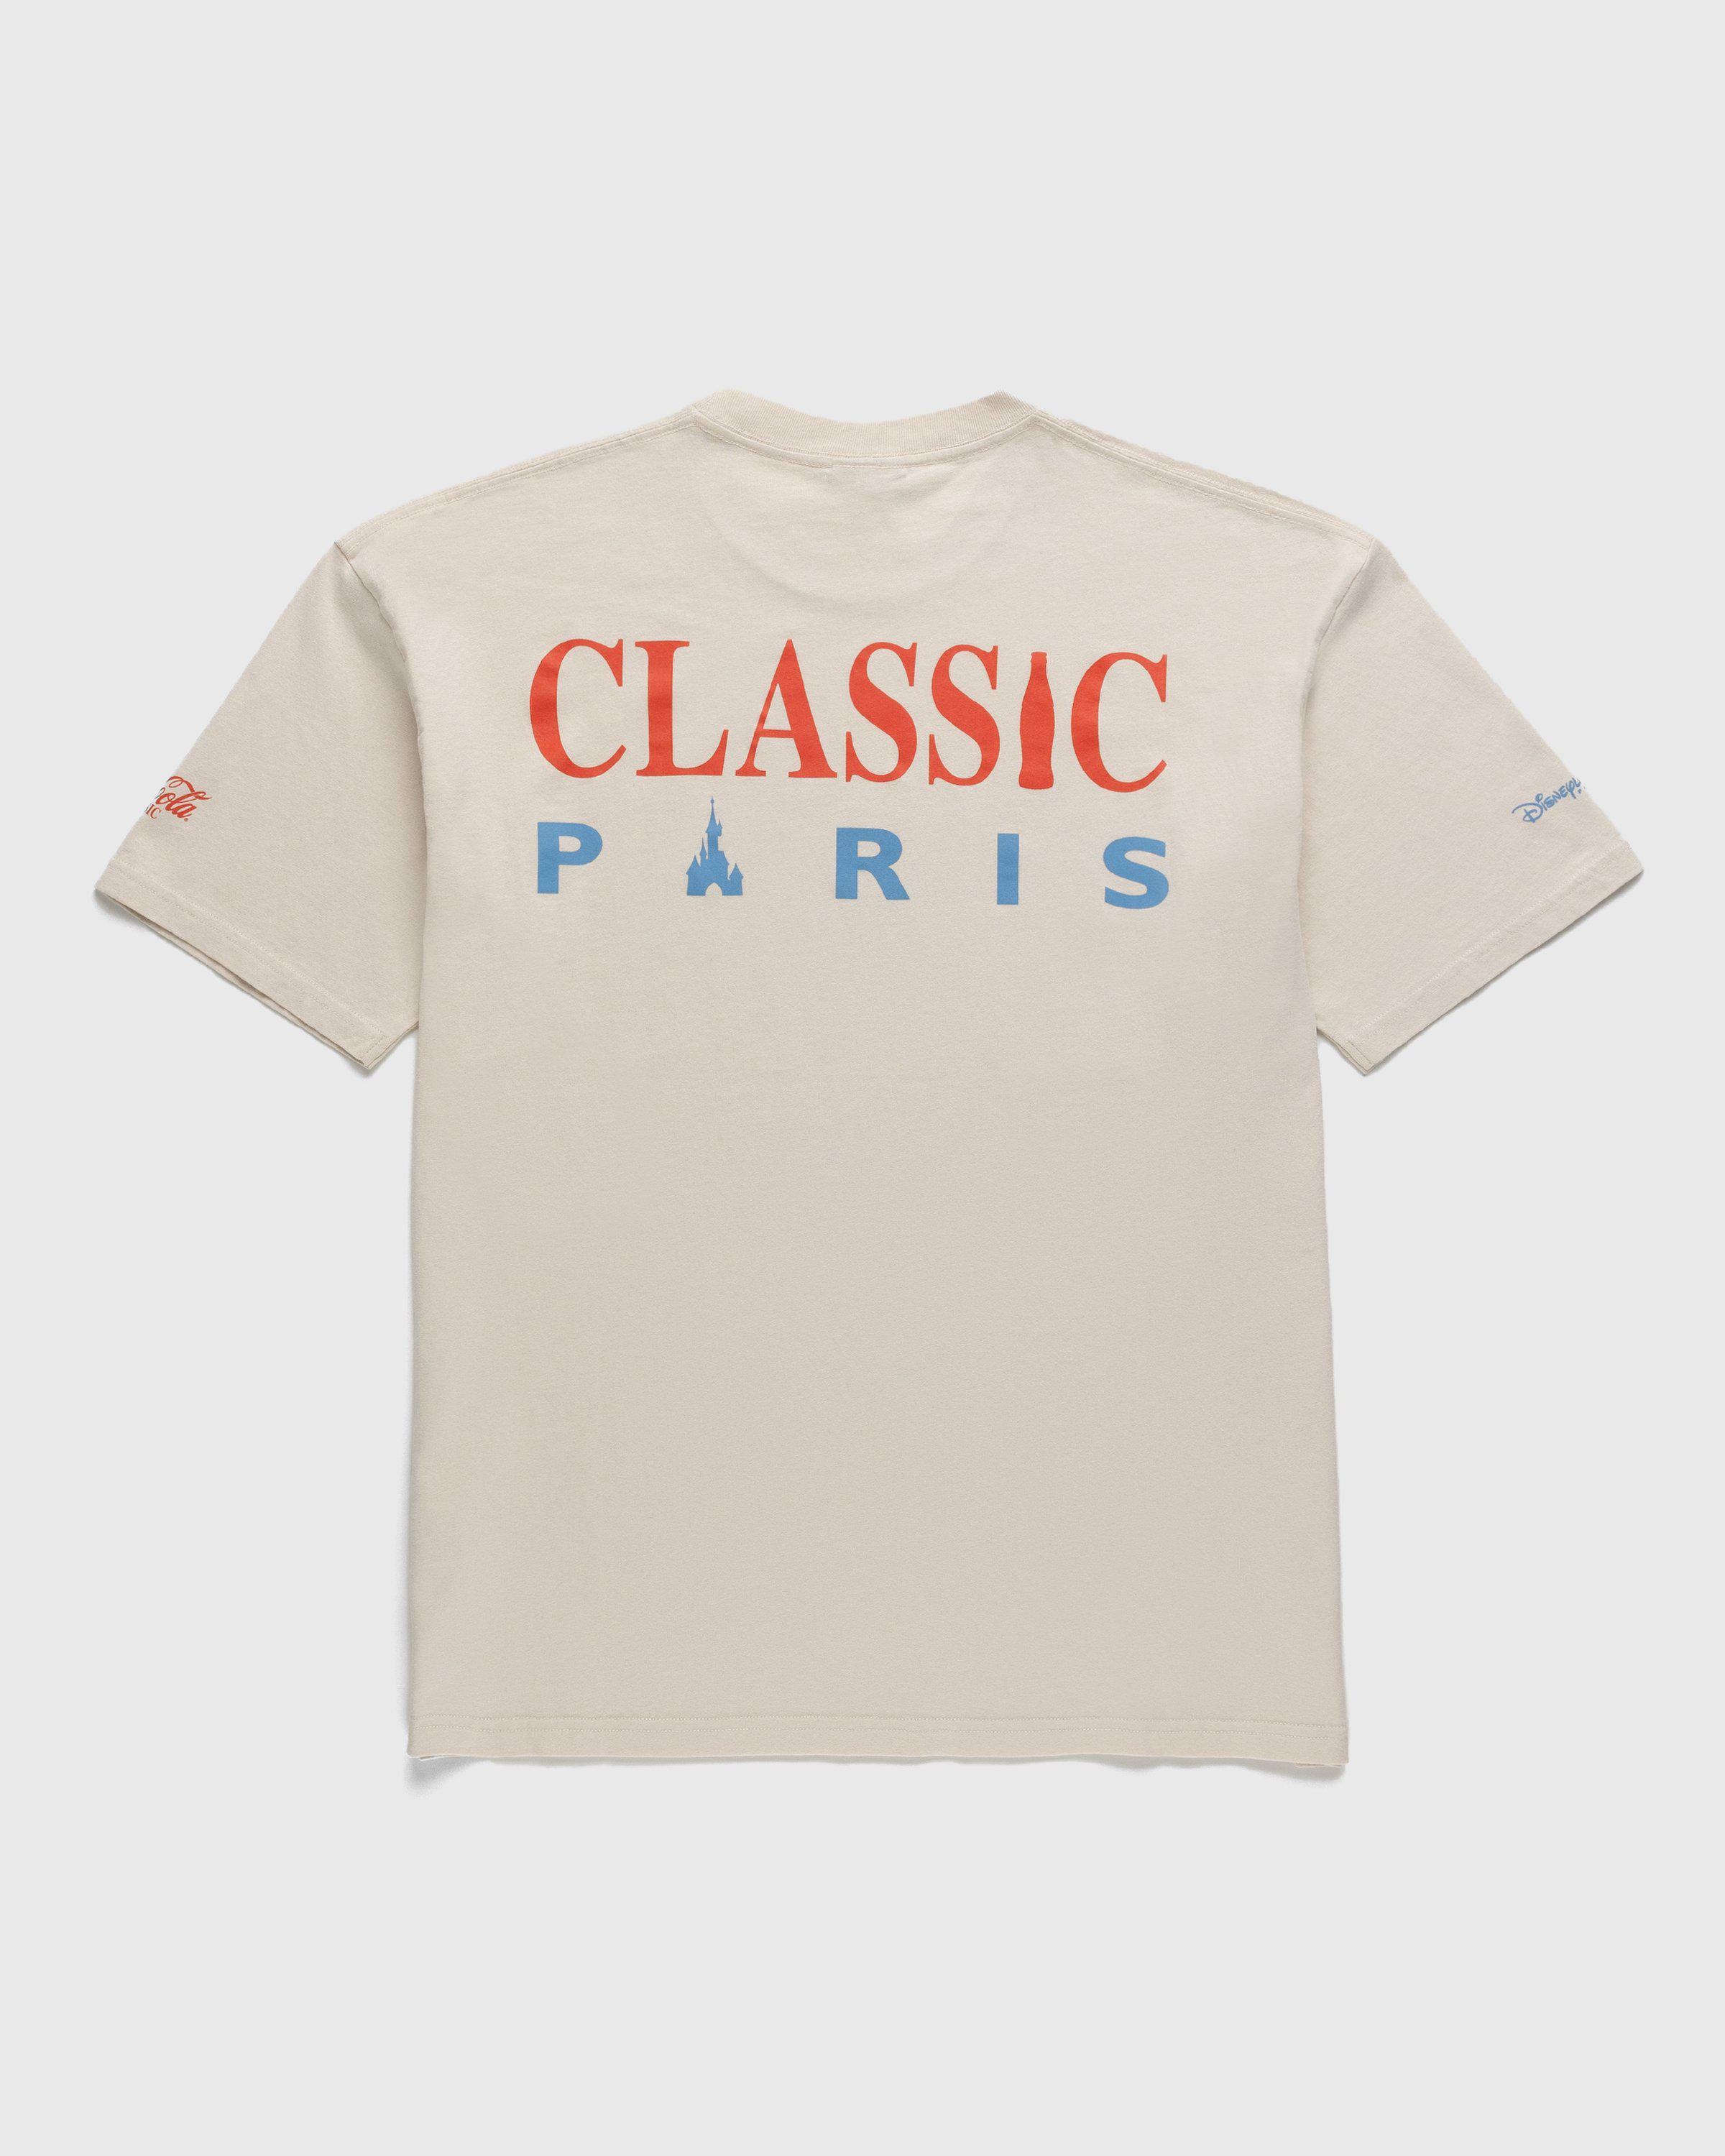 Coca-Cola x Disneyland Paris – Not In Paris 4 Classic Paris T-Shirt Natural by COCA-COLA X DISNEYLAND PARIS